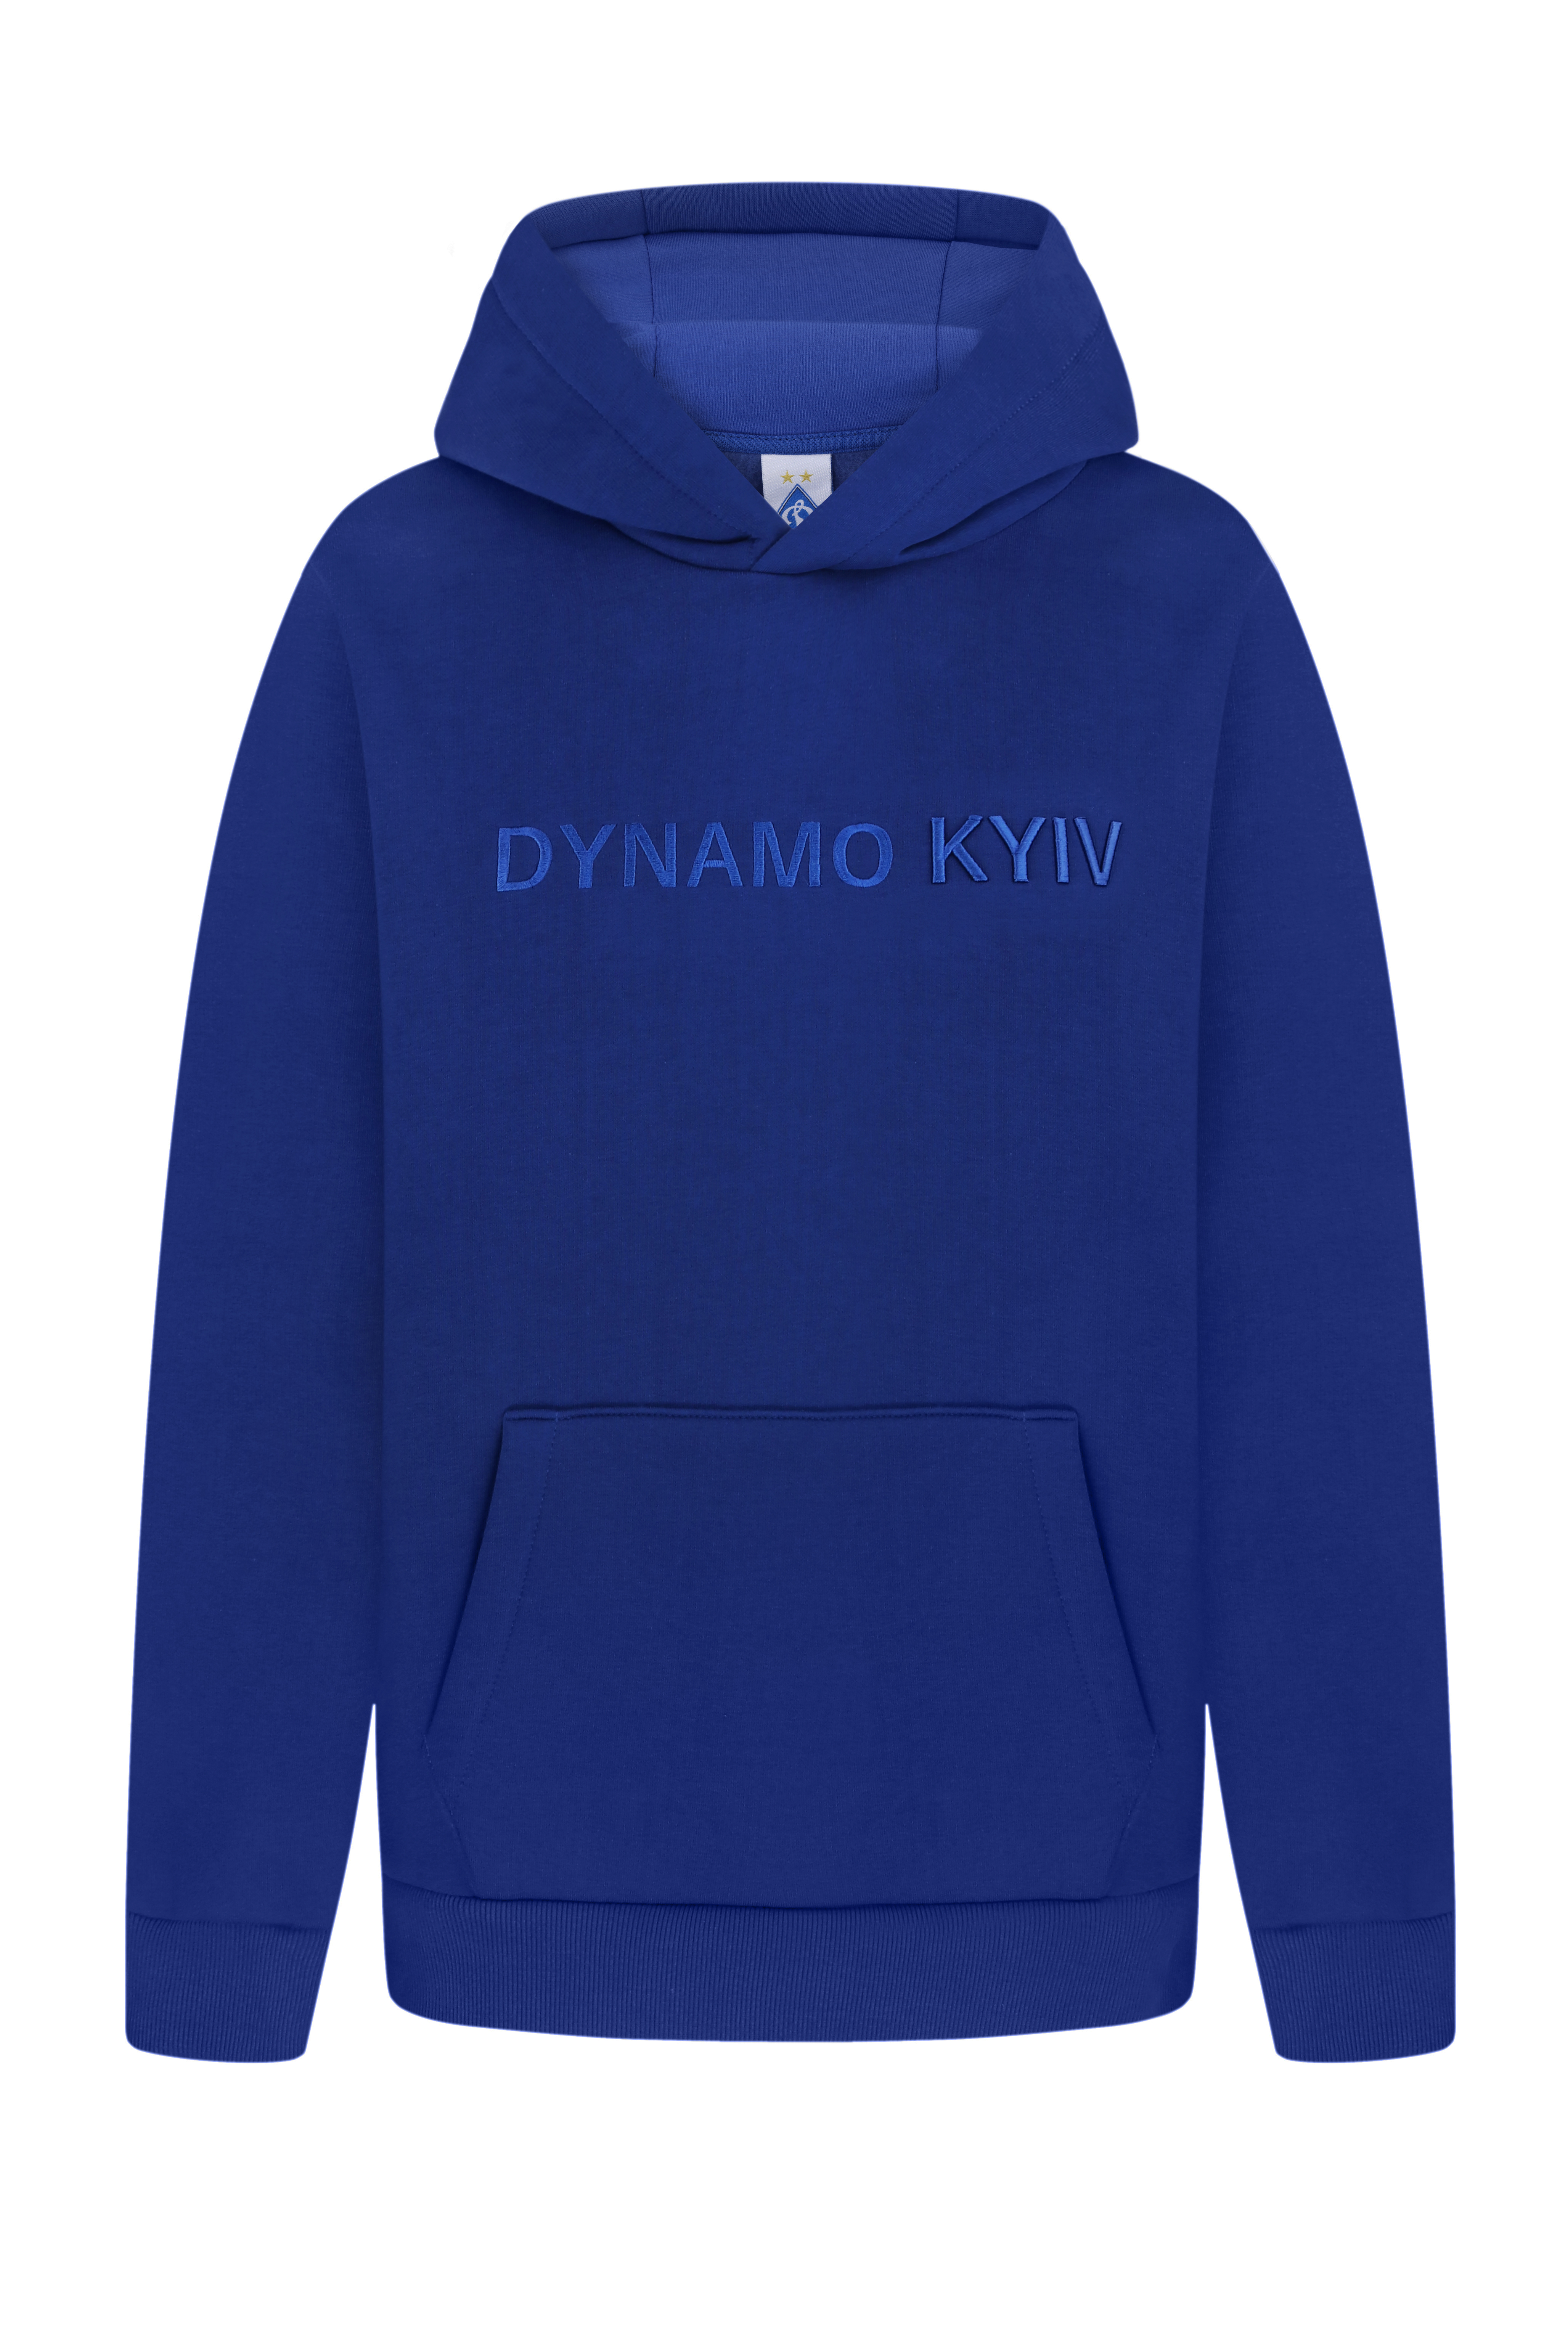 Теплий худі "Dynamo Kyiv", синій